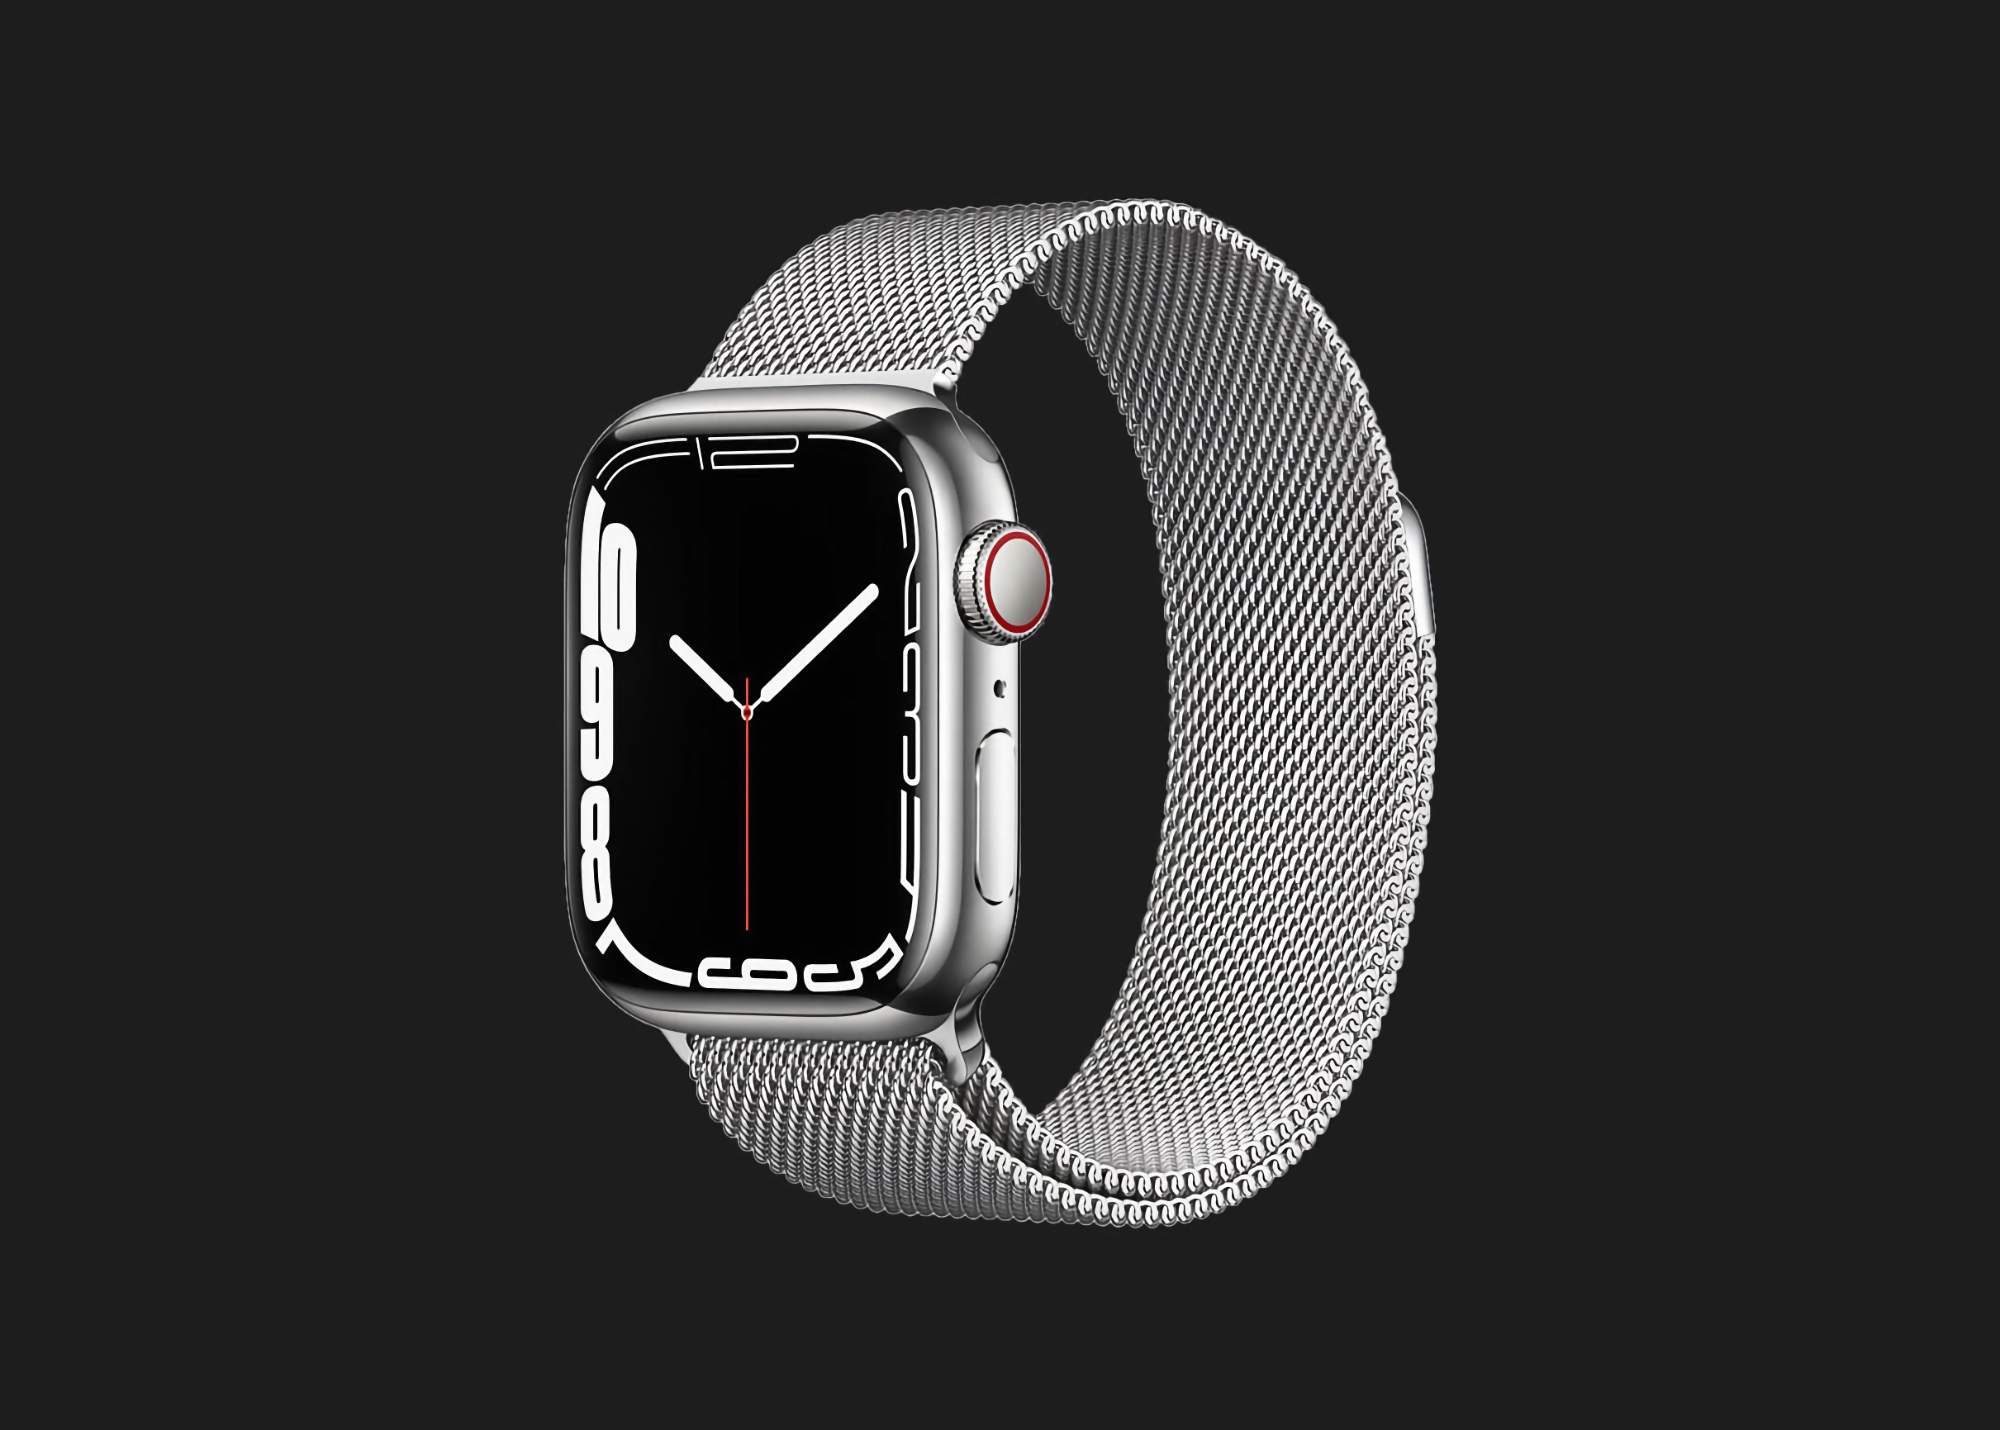 Zeitlich begrenztes Angebot: Apple Watch Series 7 mit Mobilfunkunterstützung und Edelstahlgehäuse bei Amazon mit 78 Dollar Rabatt erhältlich